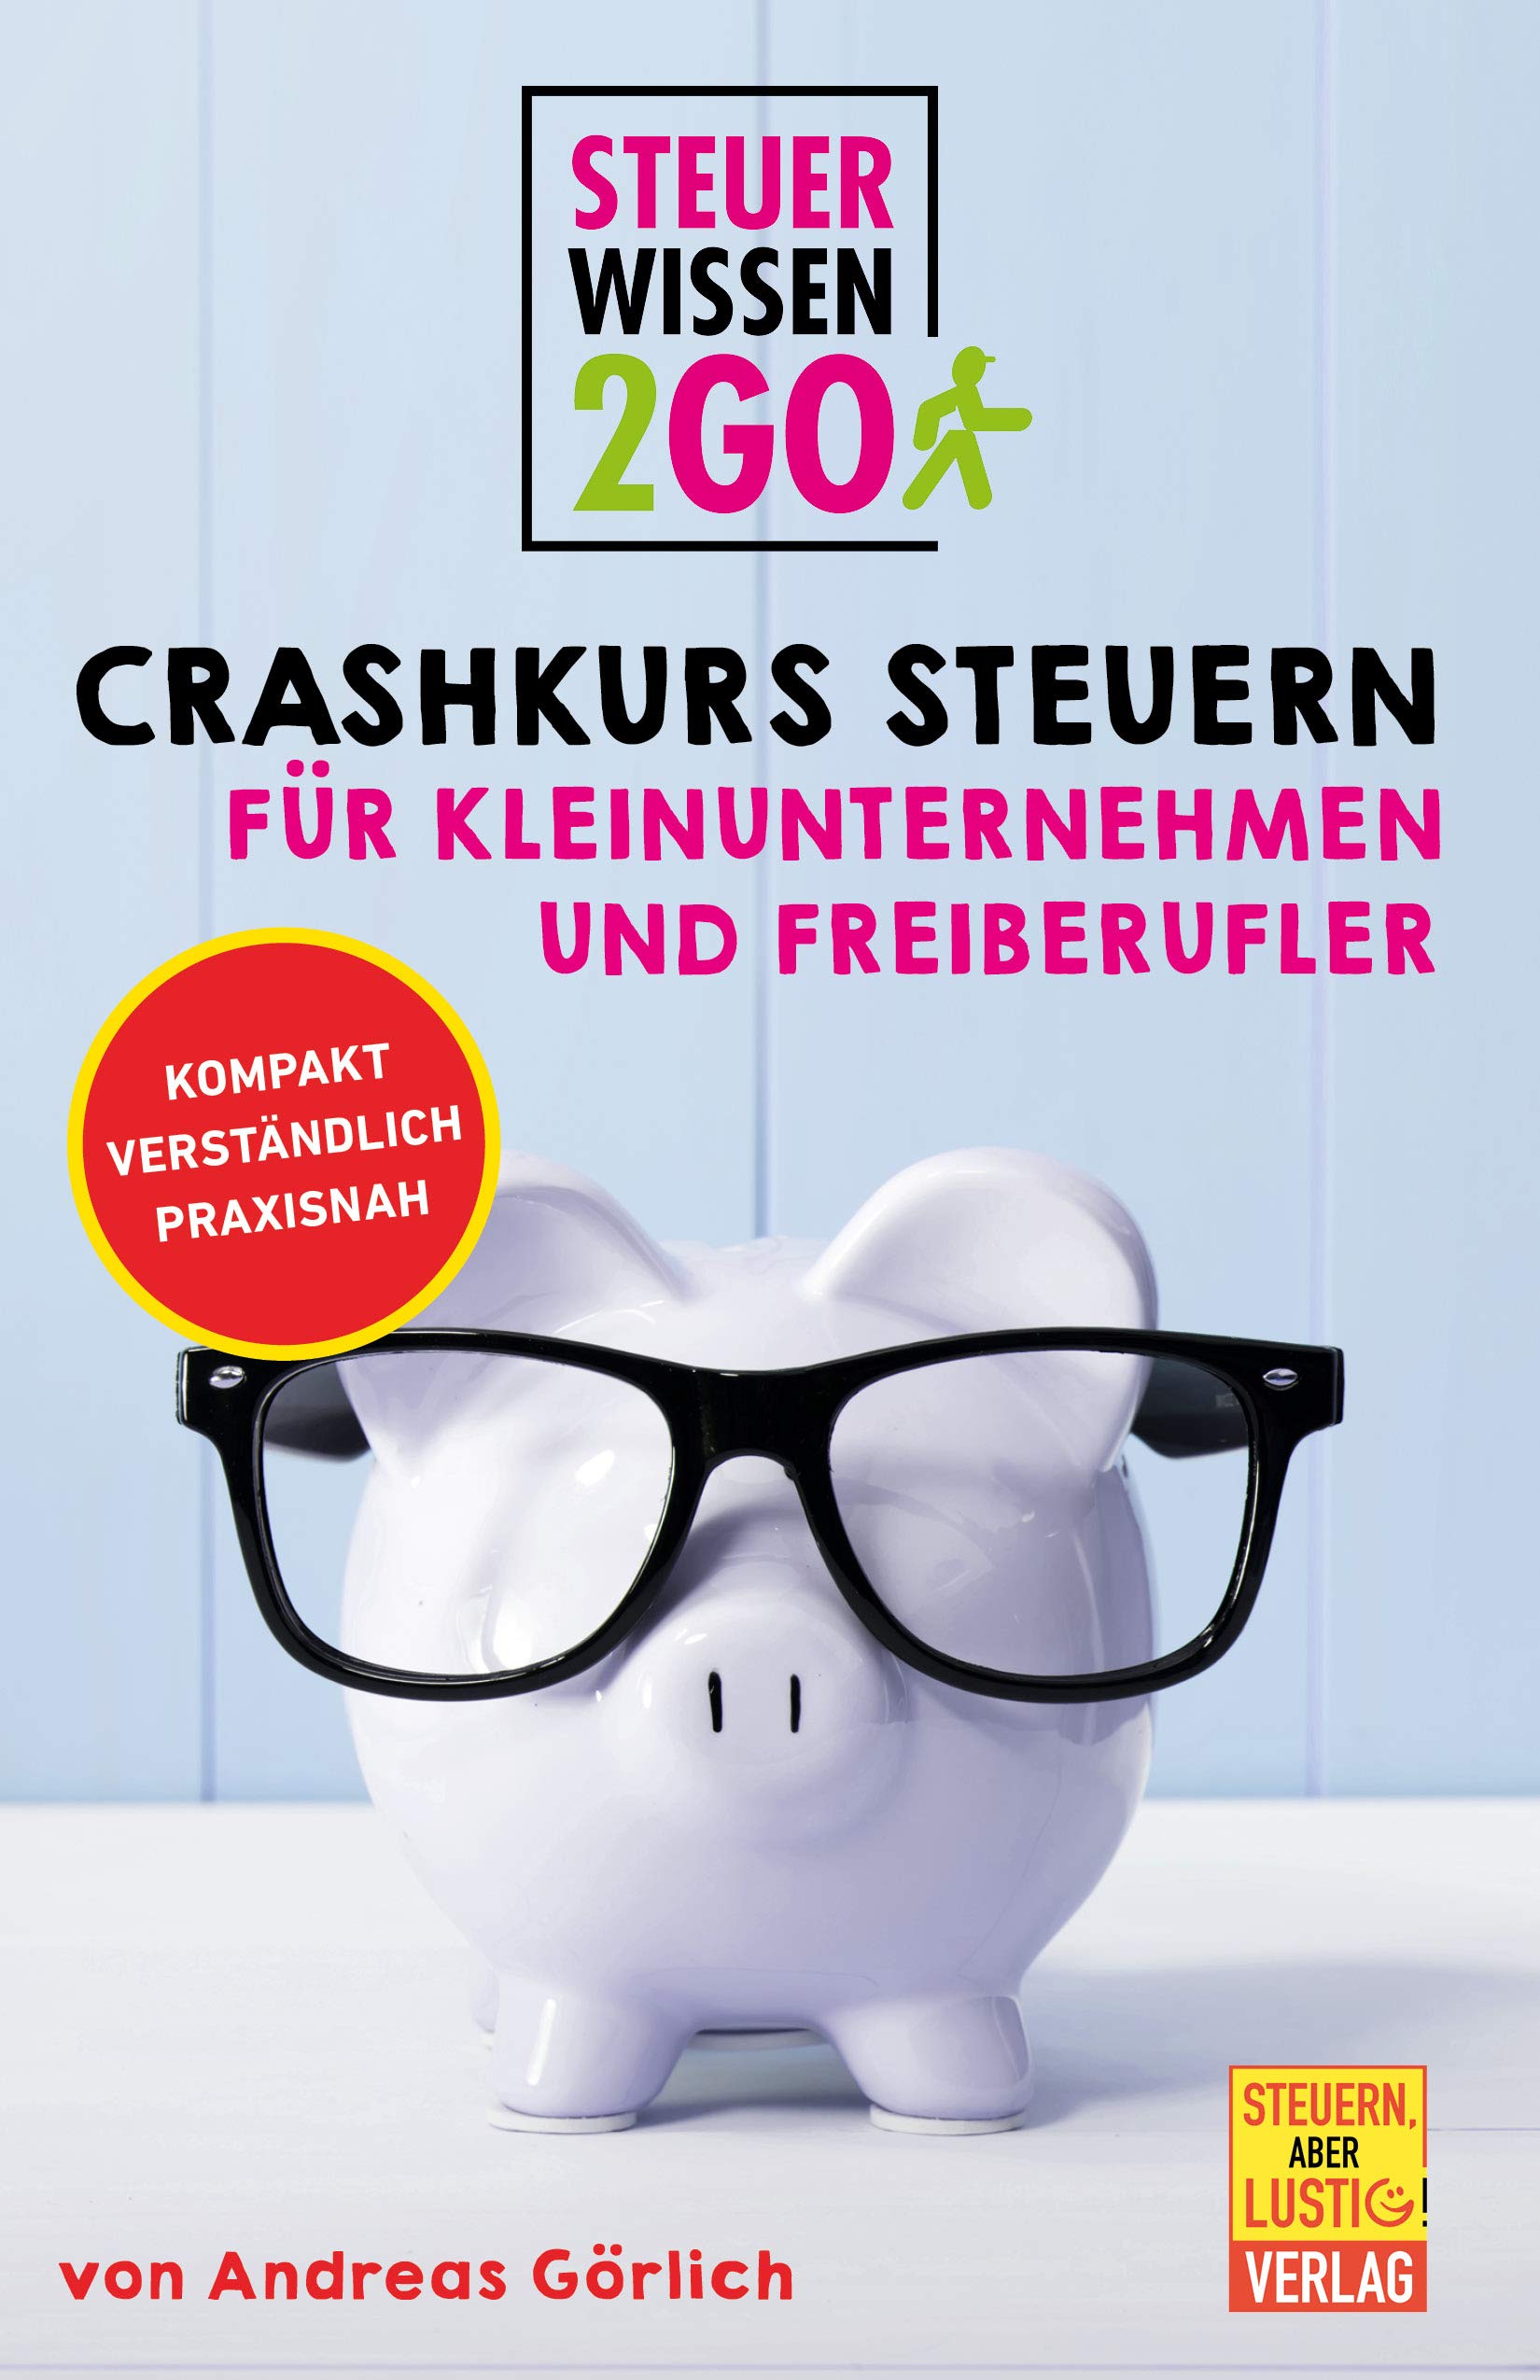 Steuerwissen2go: Crashkurs Steuern für Kleinunternehmen und Freiberufler: Steuertipps kompakt, praxisnah und verständlich (German Edition)